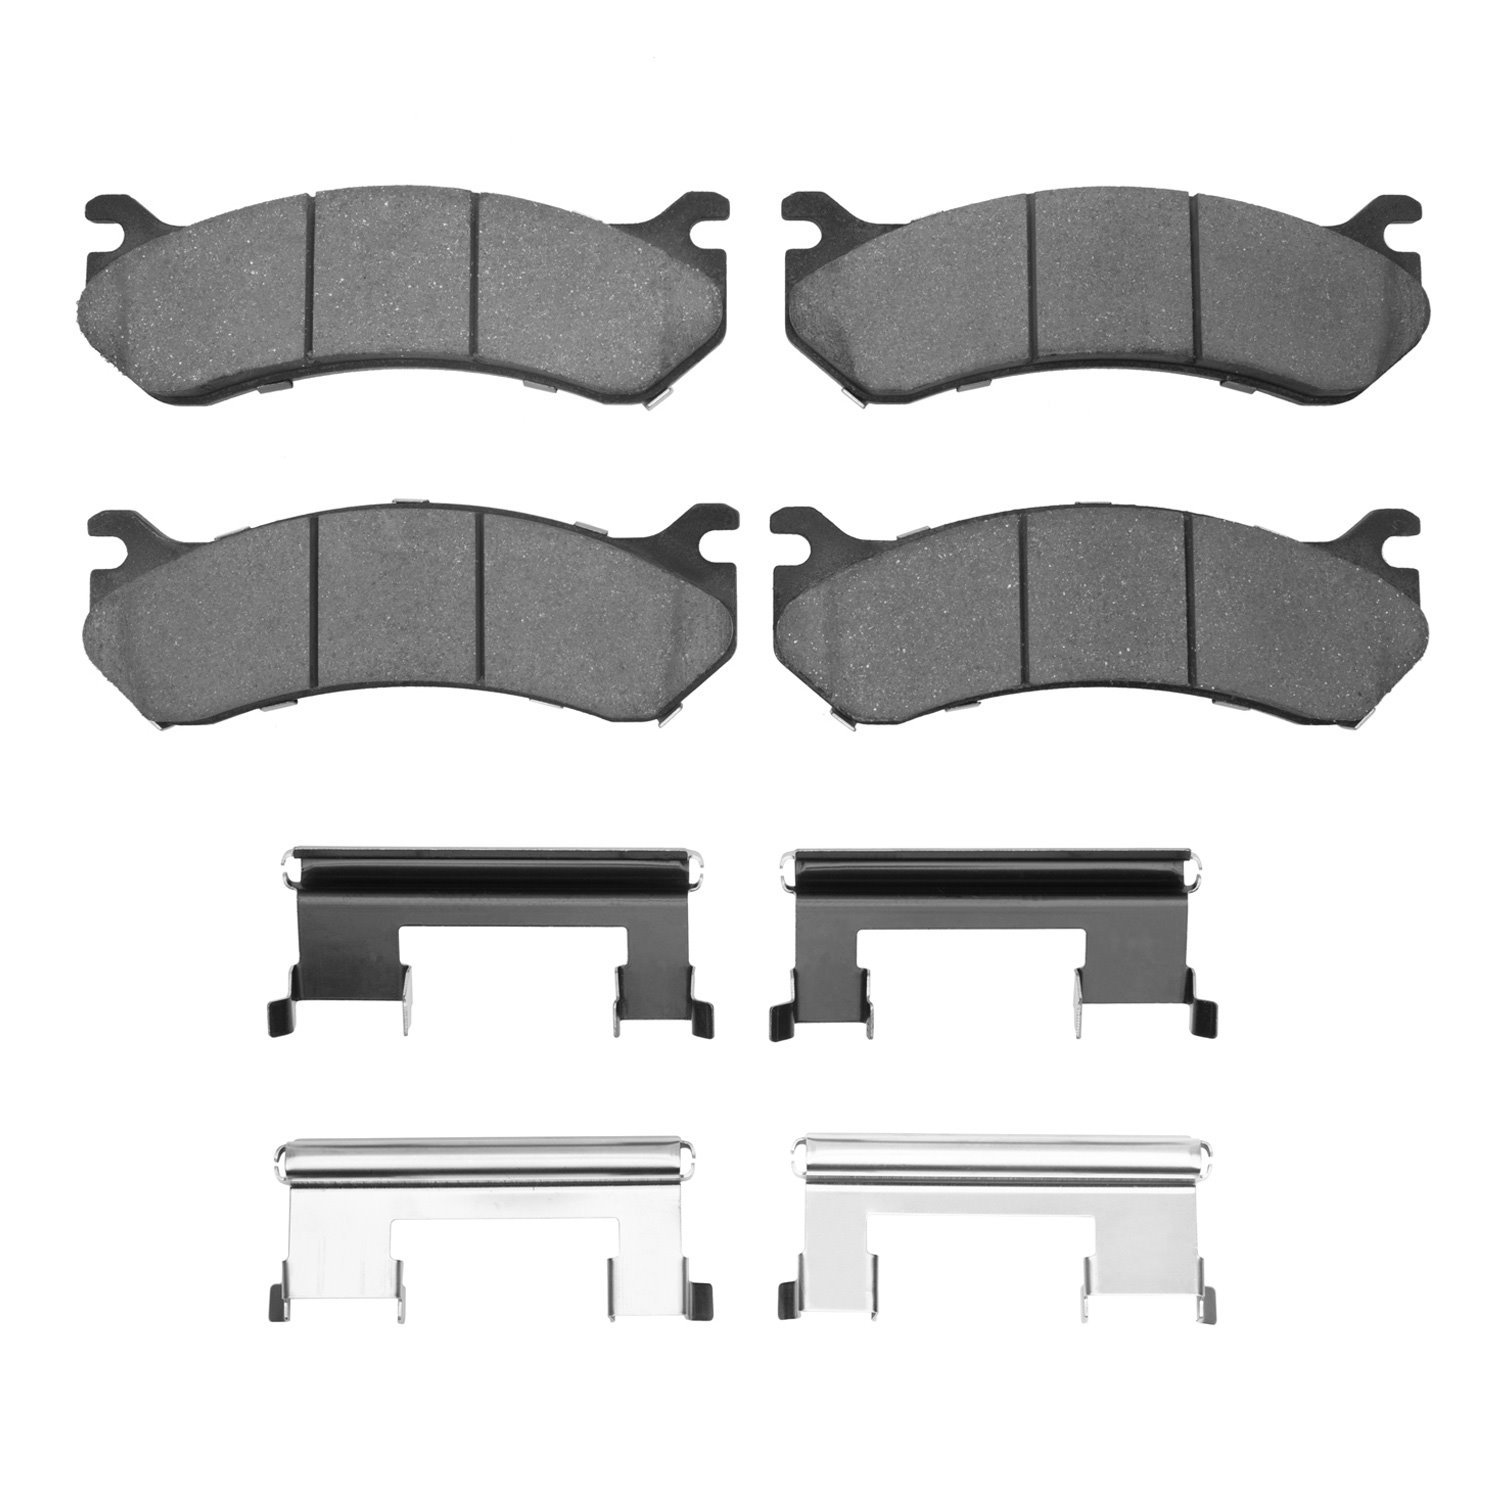 1310-0785-01 3000-Series Ceramic Brake Pads & Hardware Kit, 1999-2013 GM, Position: Rear,Front